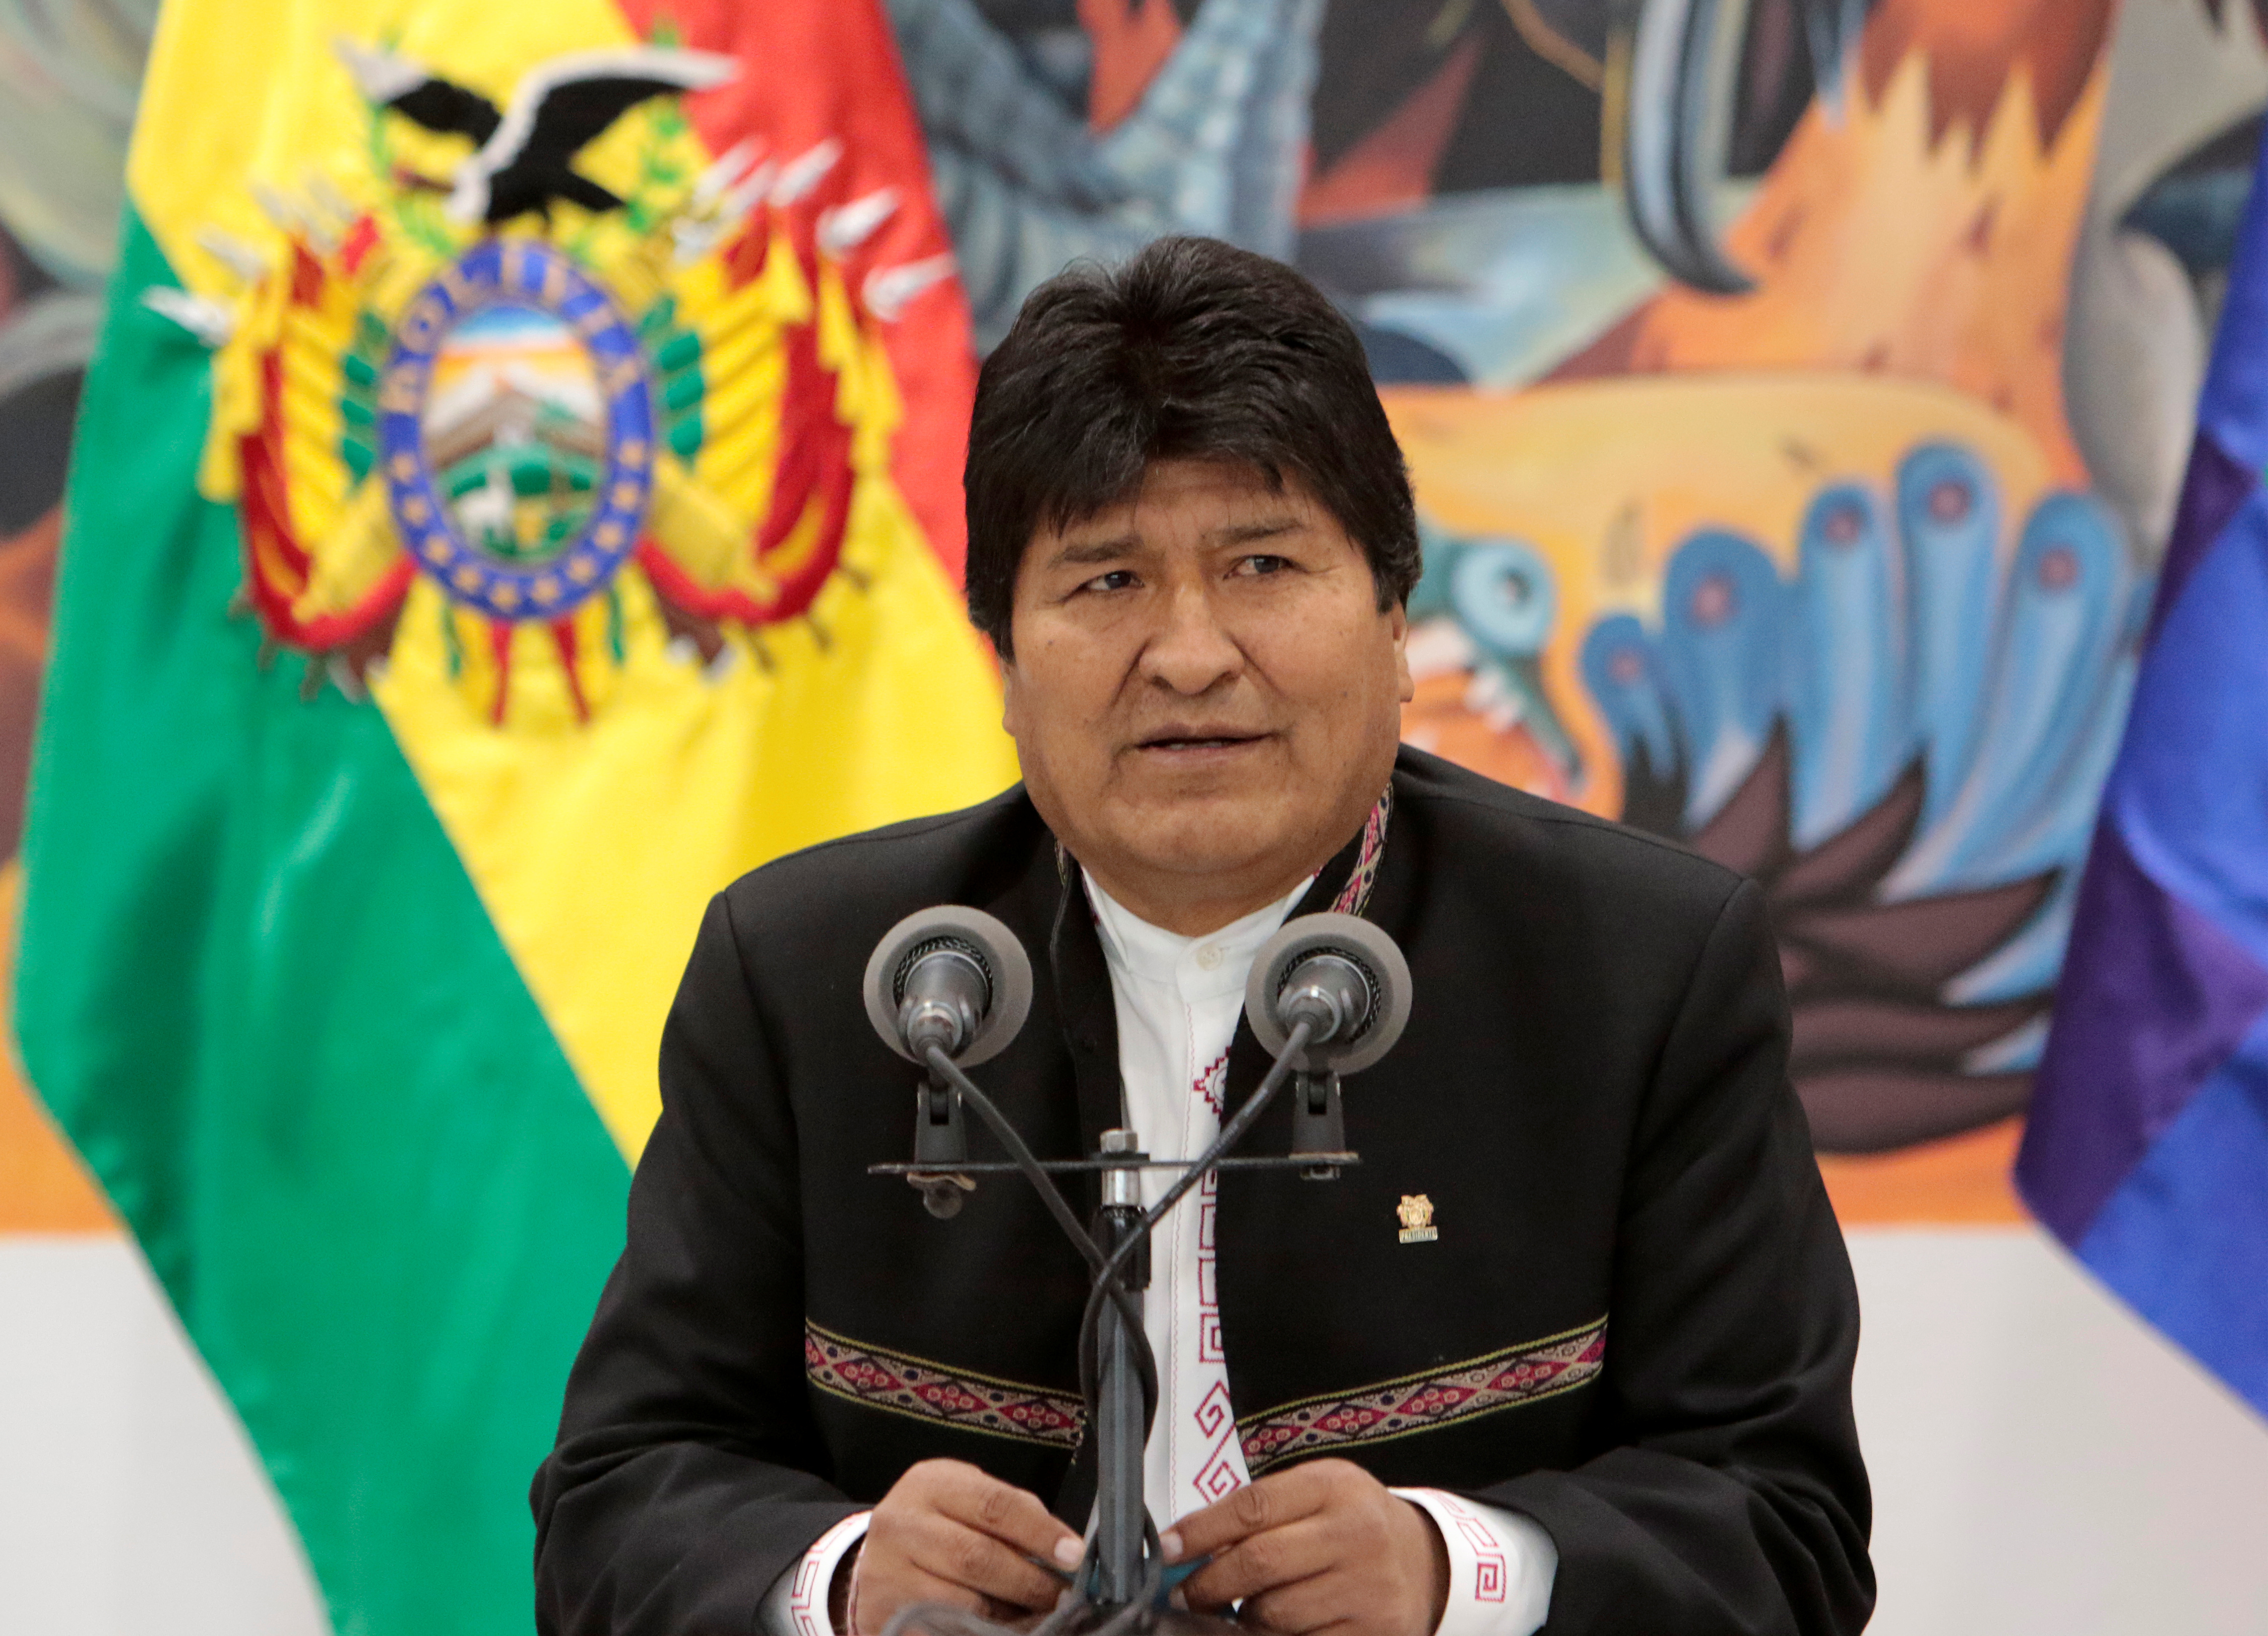 Le président bolivien Evo Morales va quitter ses fonctions, a annoncé dimanche un communiqué diffusé par la télévision. Le chef d'Etat est contesté depuis le 20 octobre, date à laquelle il a été reconduit dans ses fonctions au terme d'un scrutin dont la sincérité est jugée viciée par l'opposition.